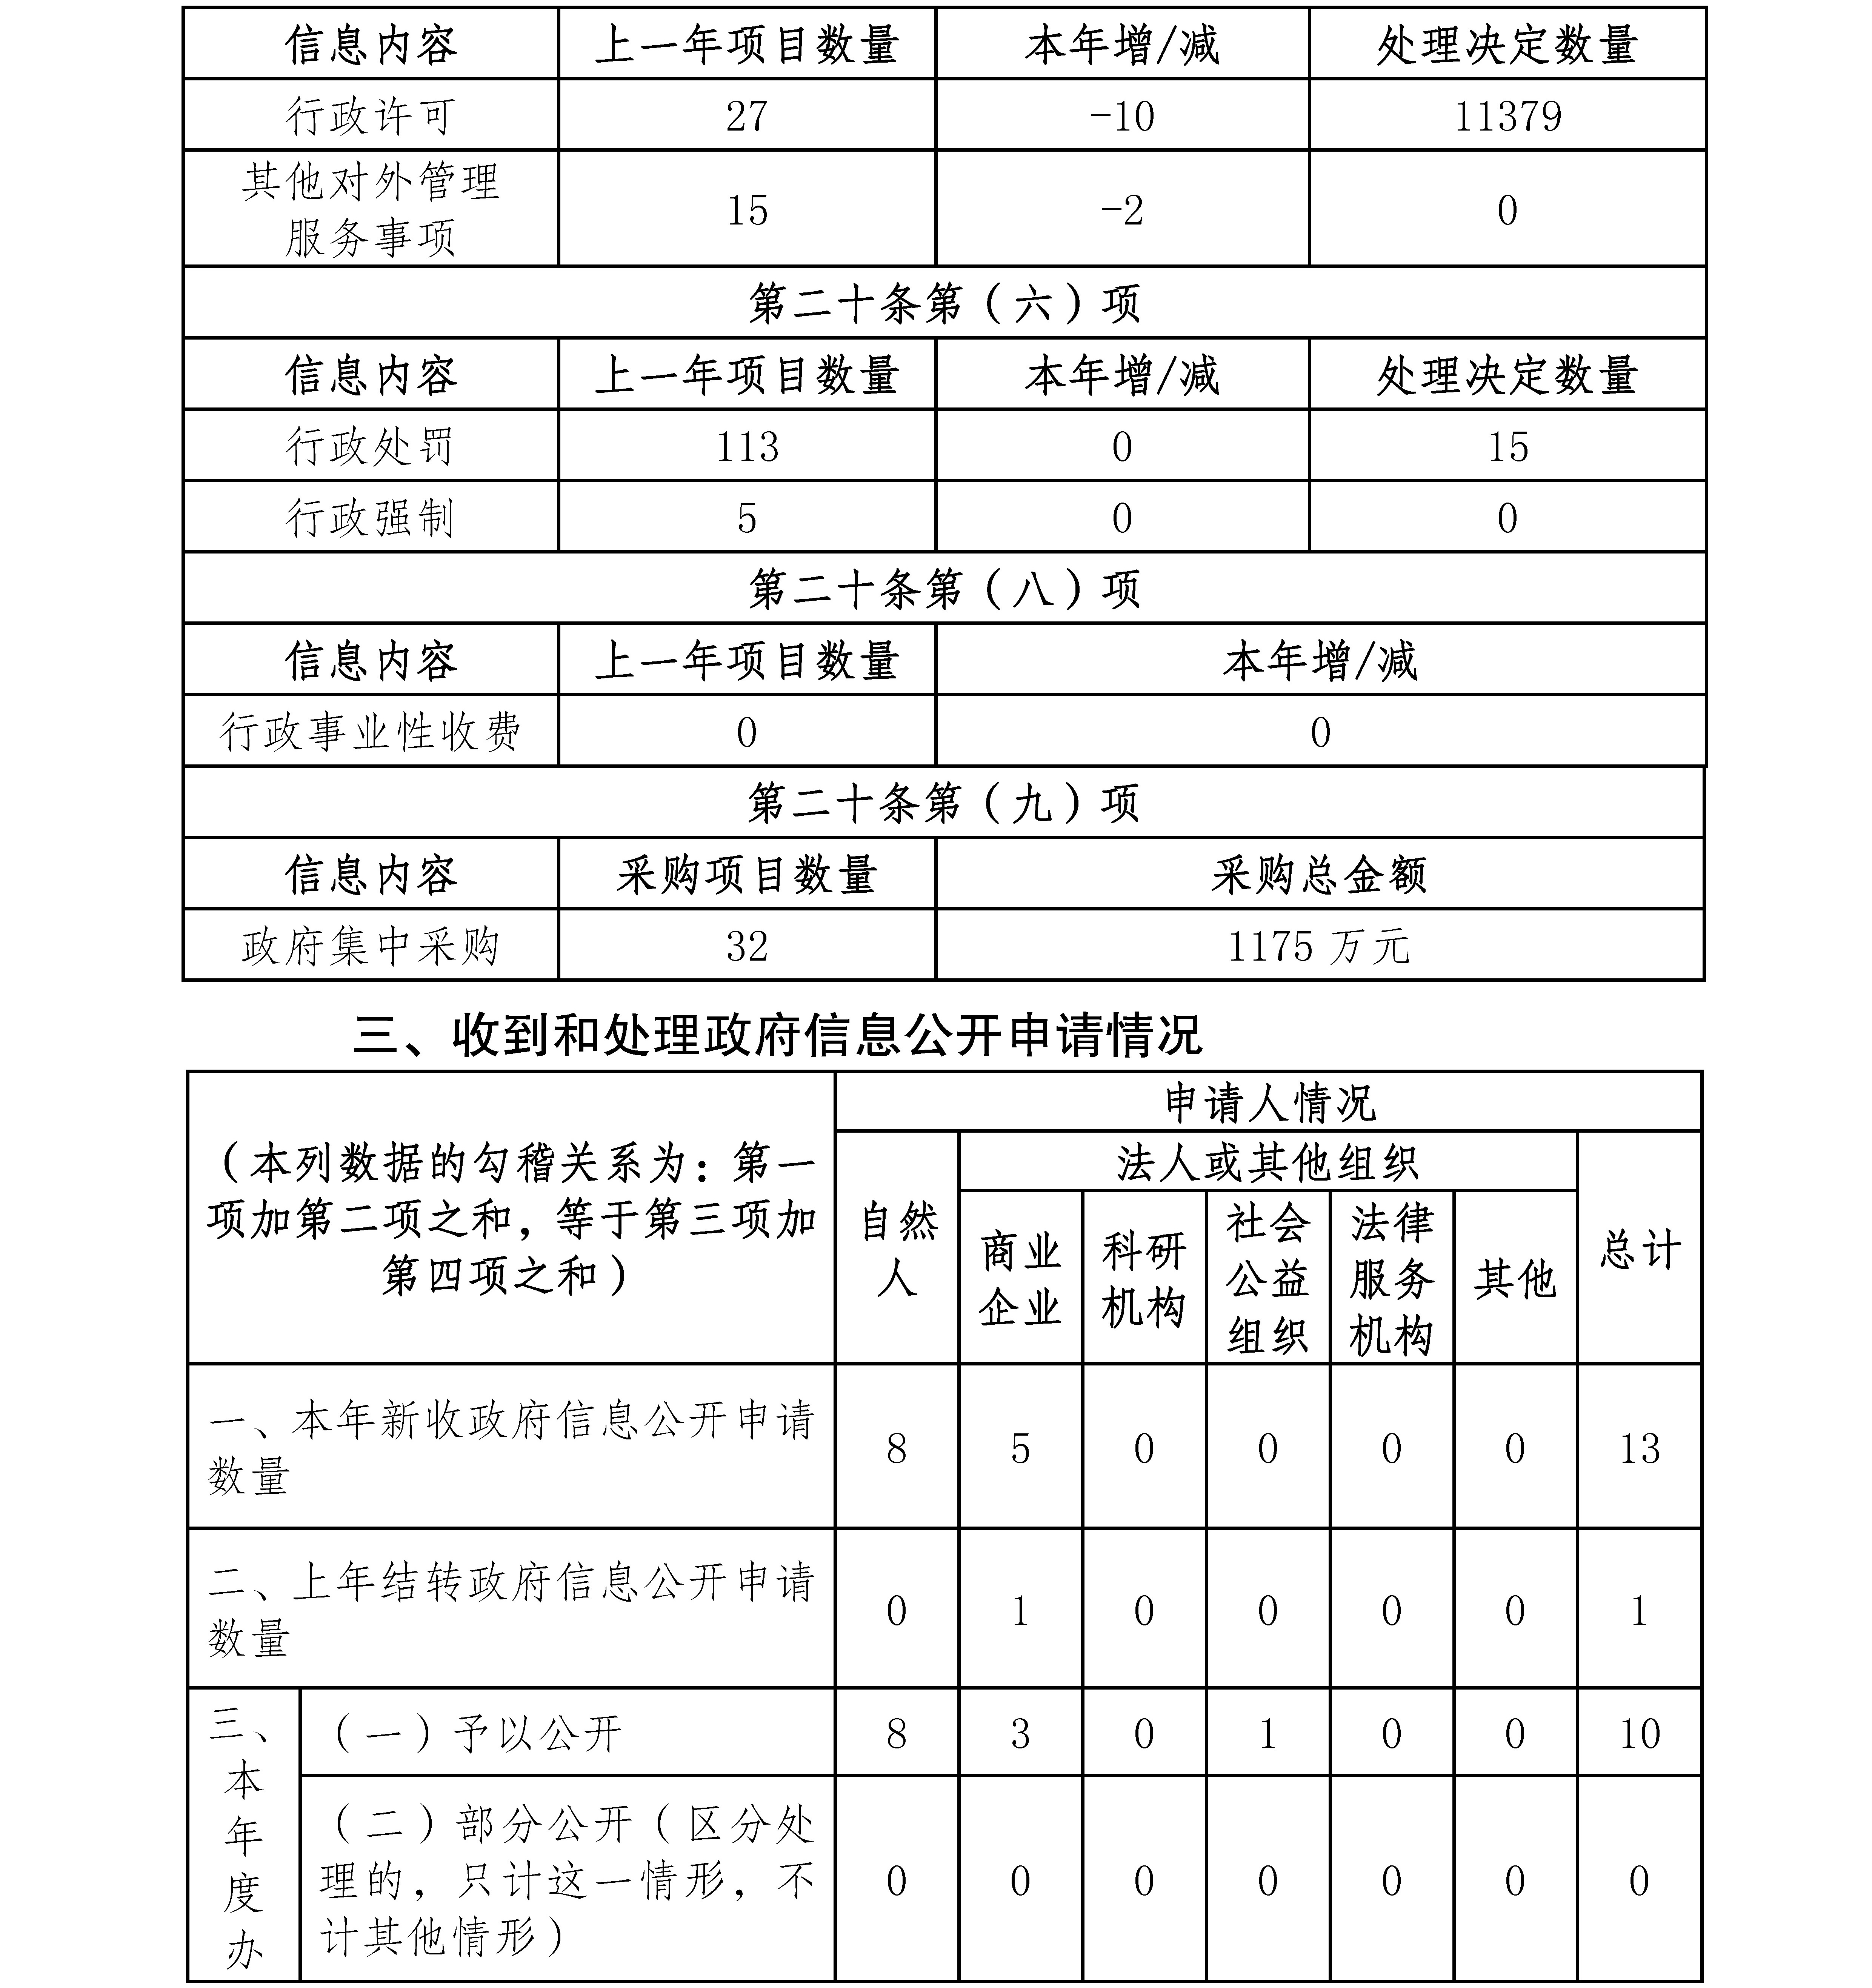 雲南省審計廳2020年政府信息公開工作年度報告